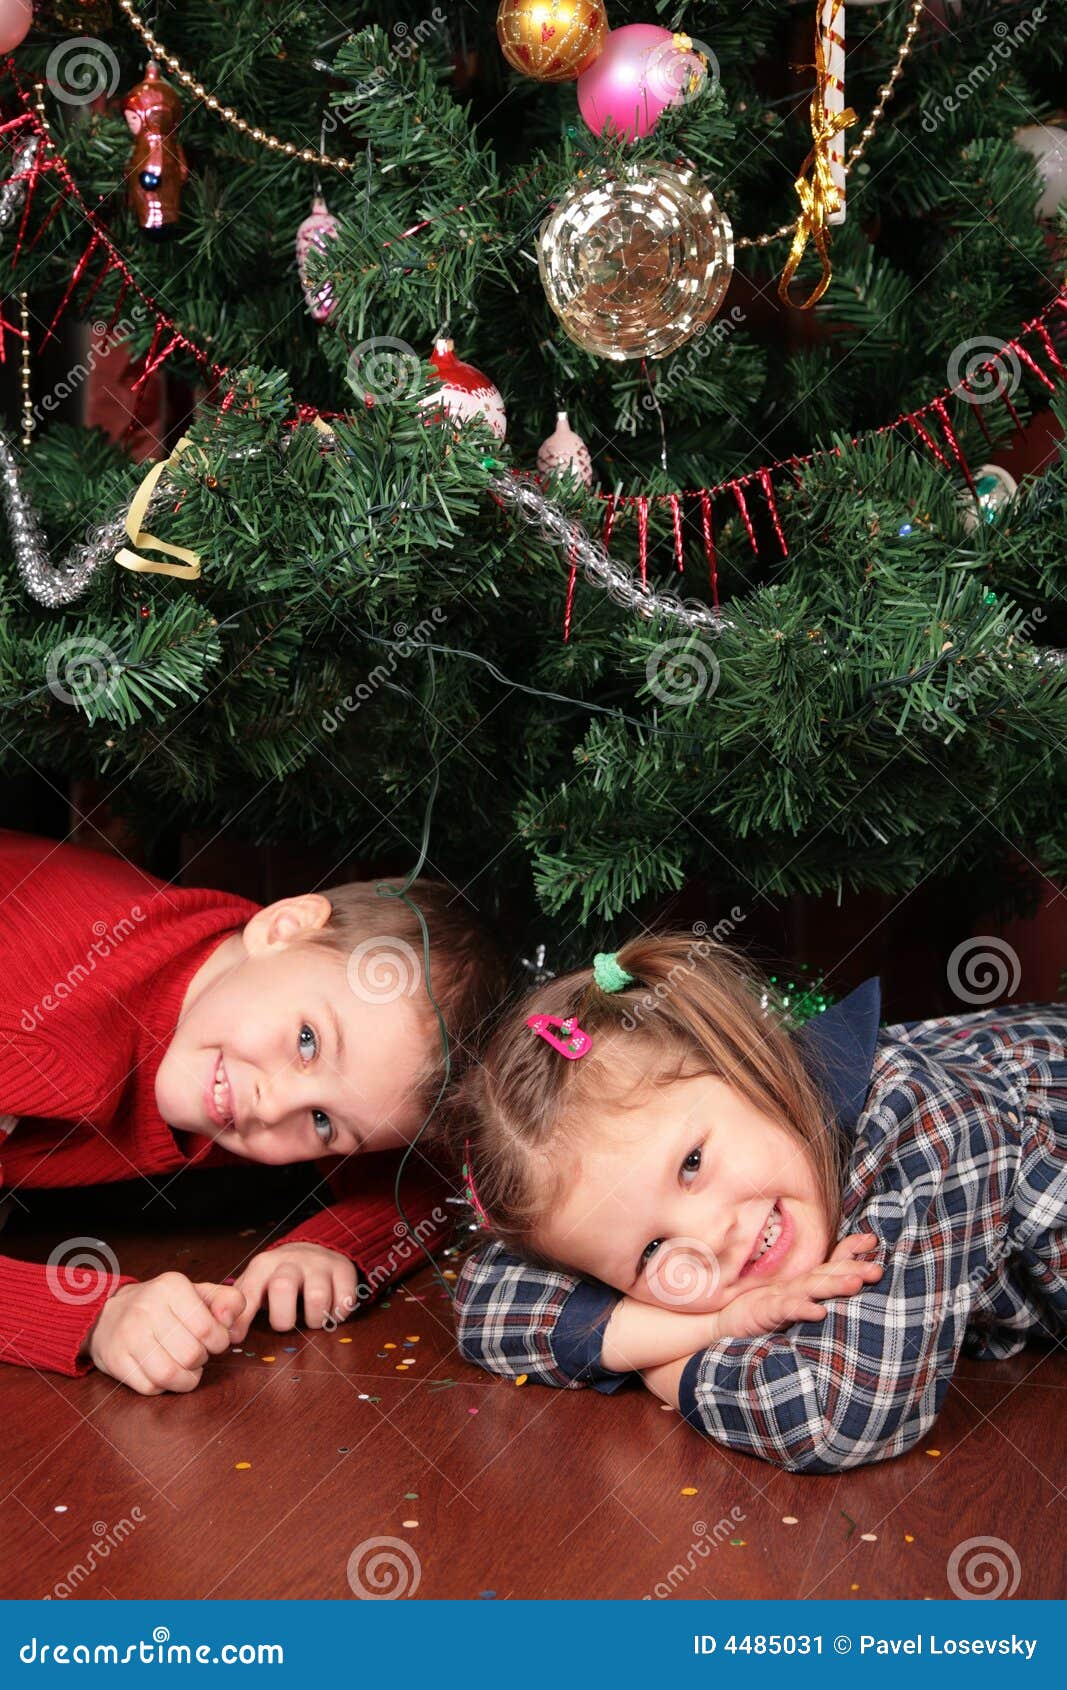 Natale Sotto L Albero.Bambini Sotto L Albero Di Natale Immagine Stock Immagine Di Persona Bambini 4485031